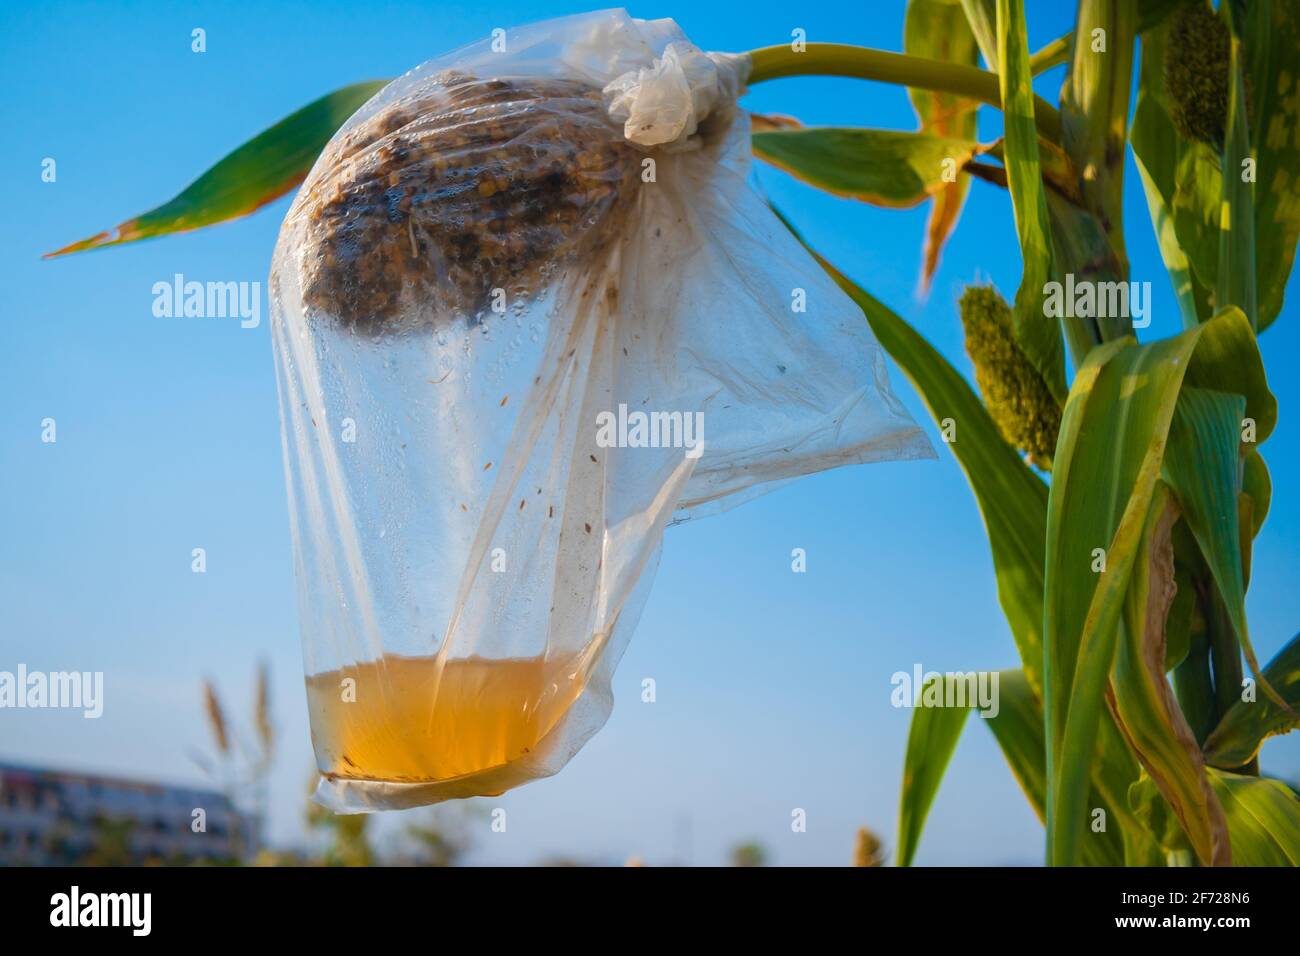 perdez de la récolte de sorgho, couvert dans un sac en plastique pour protéger des oiseaux et pour recueillir les graines pour la saison suivante. Banque D'Images